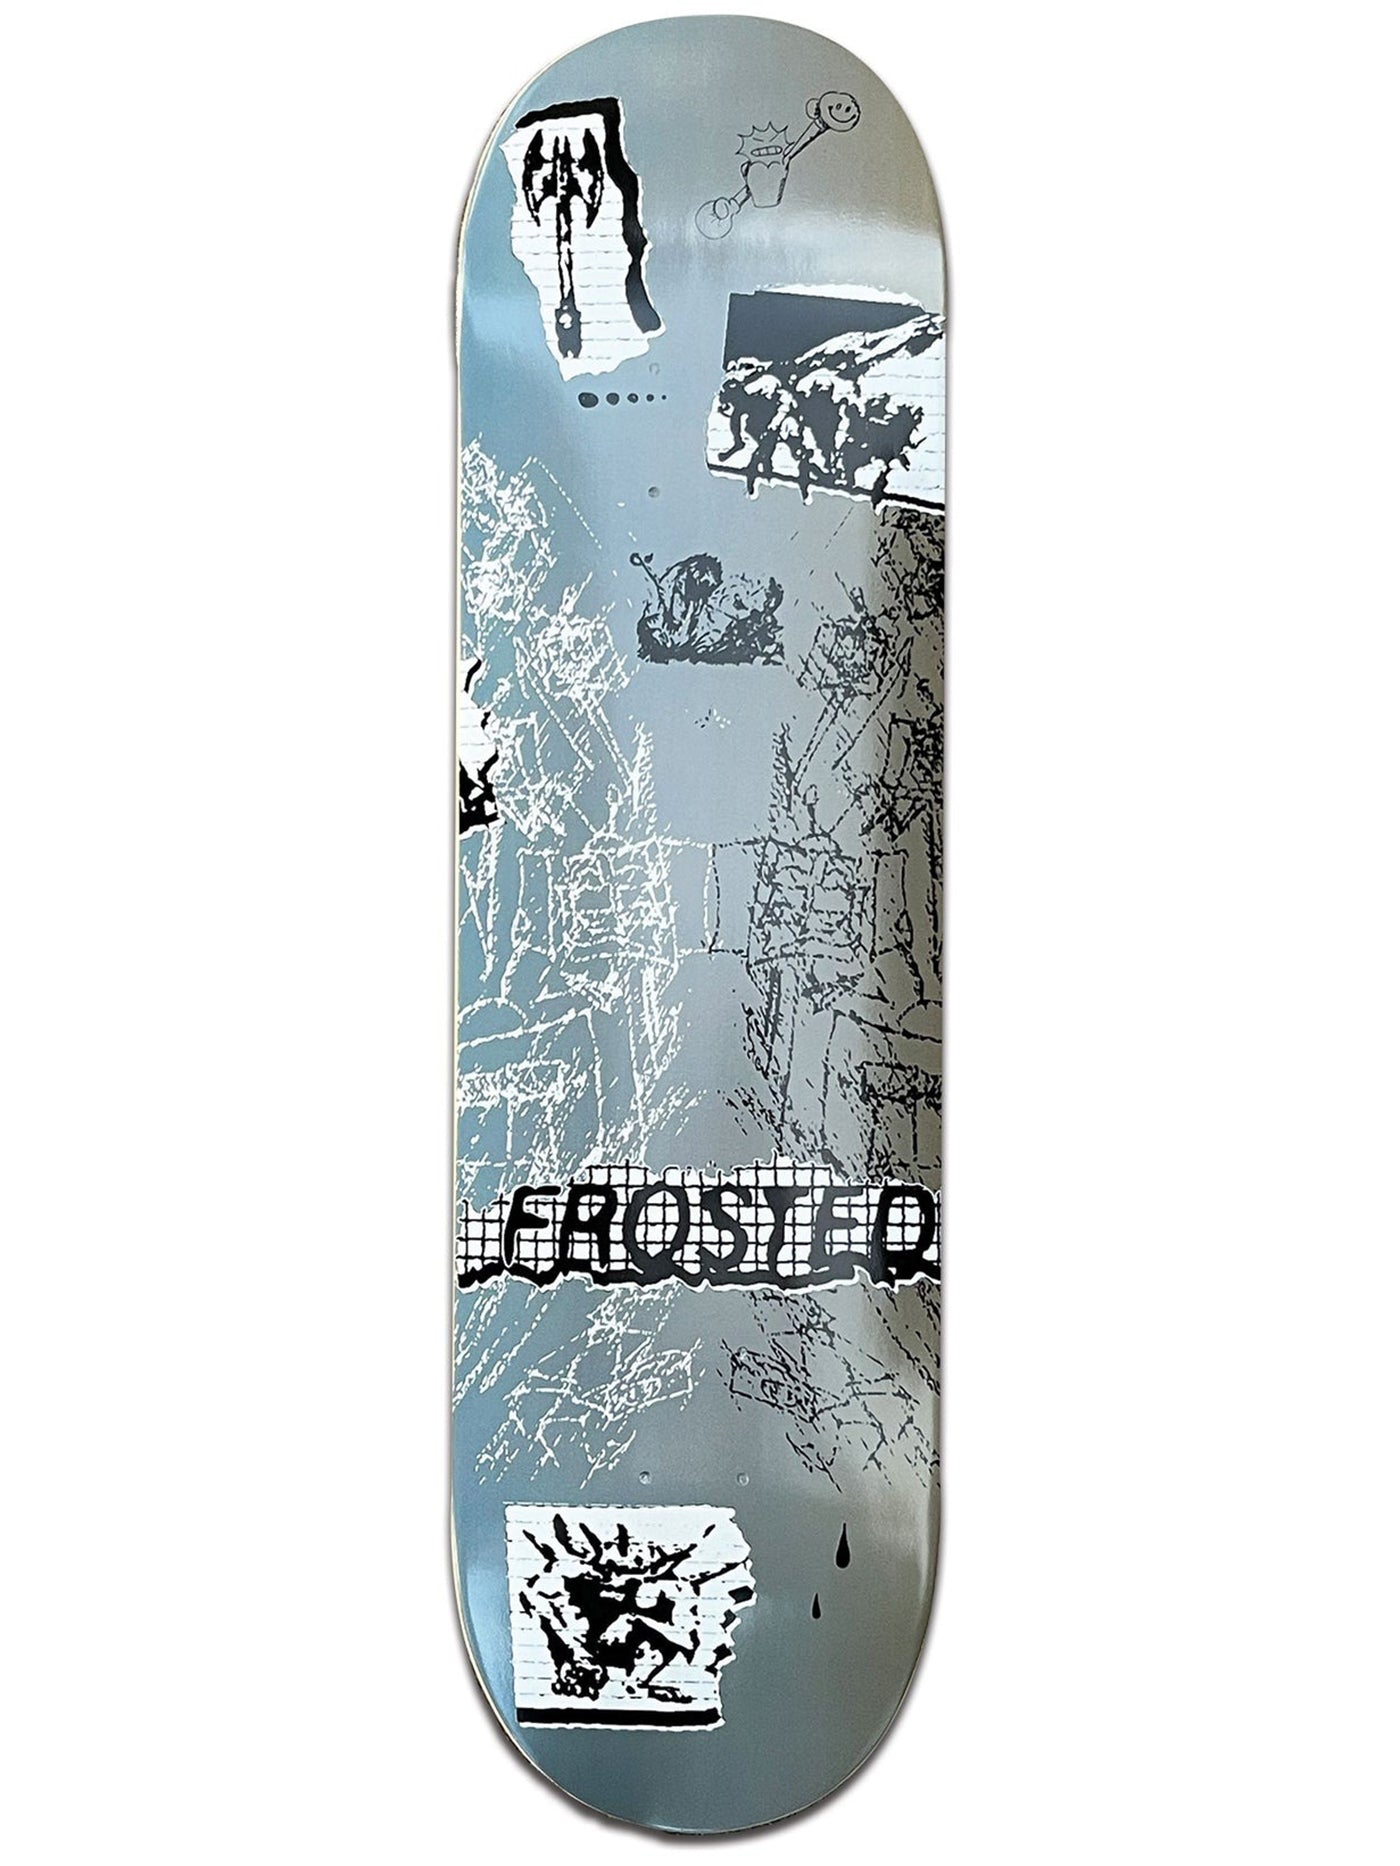 Frosted Skateboards Sketchbook Two Skateboard Deck